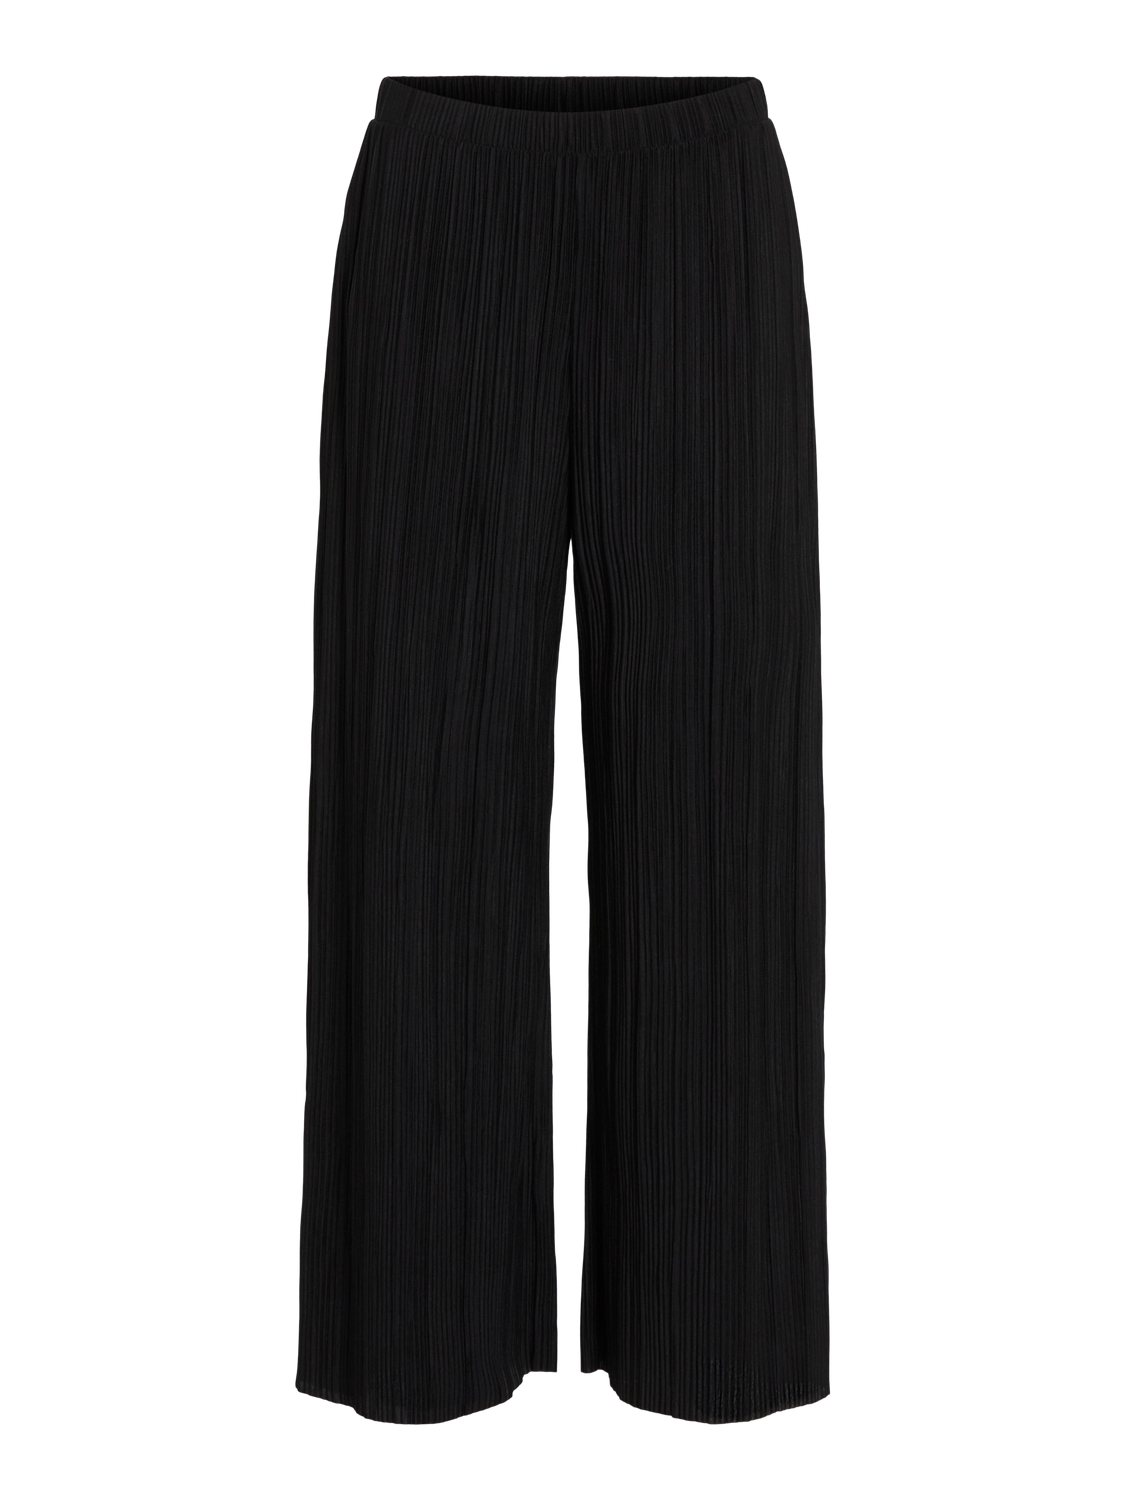 VIPLISA Pants - Black Beauty